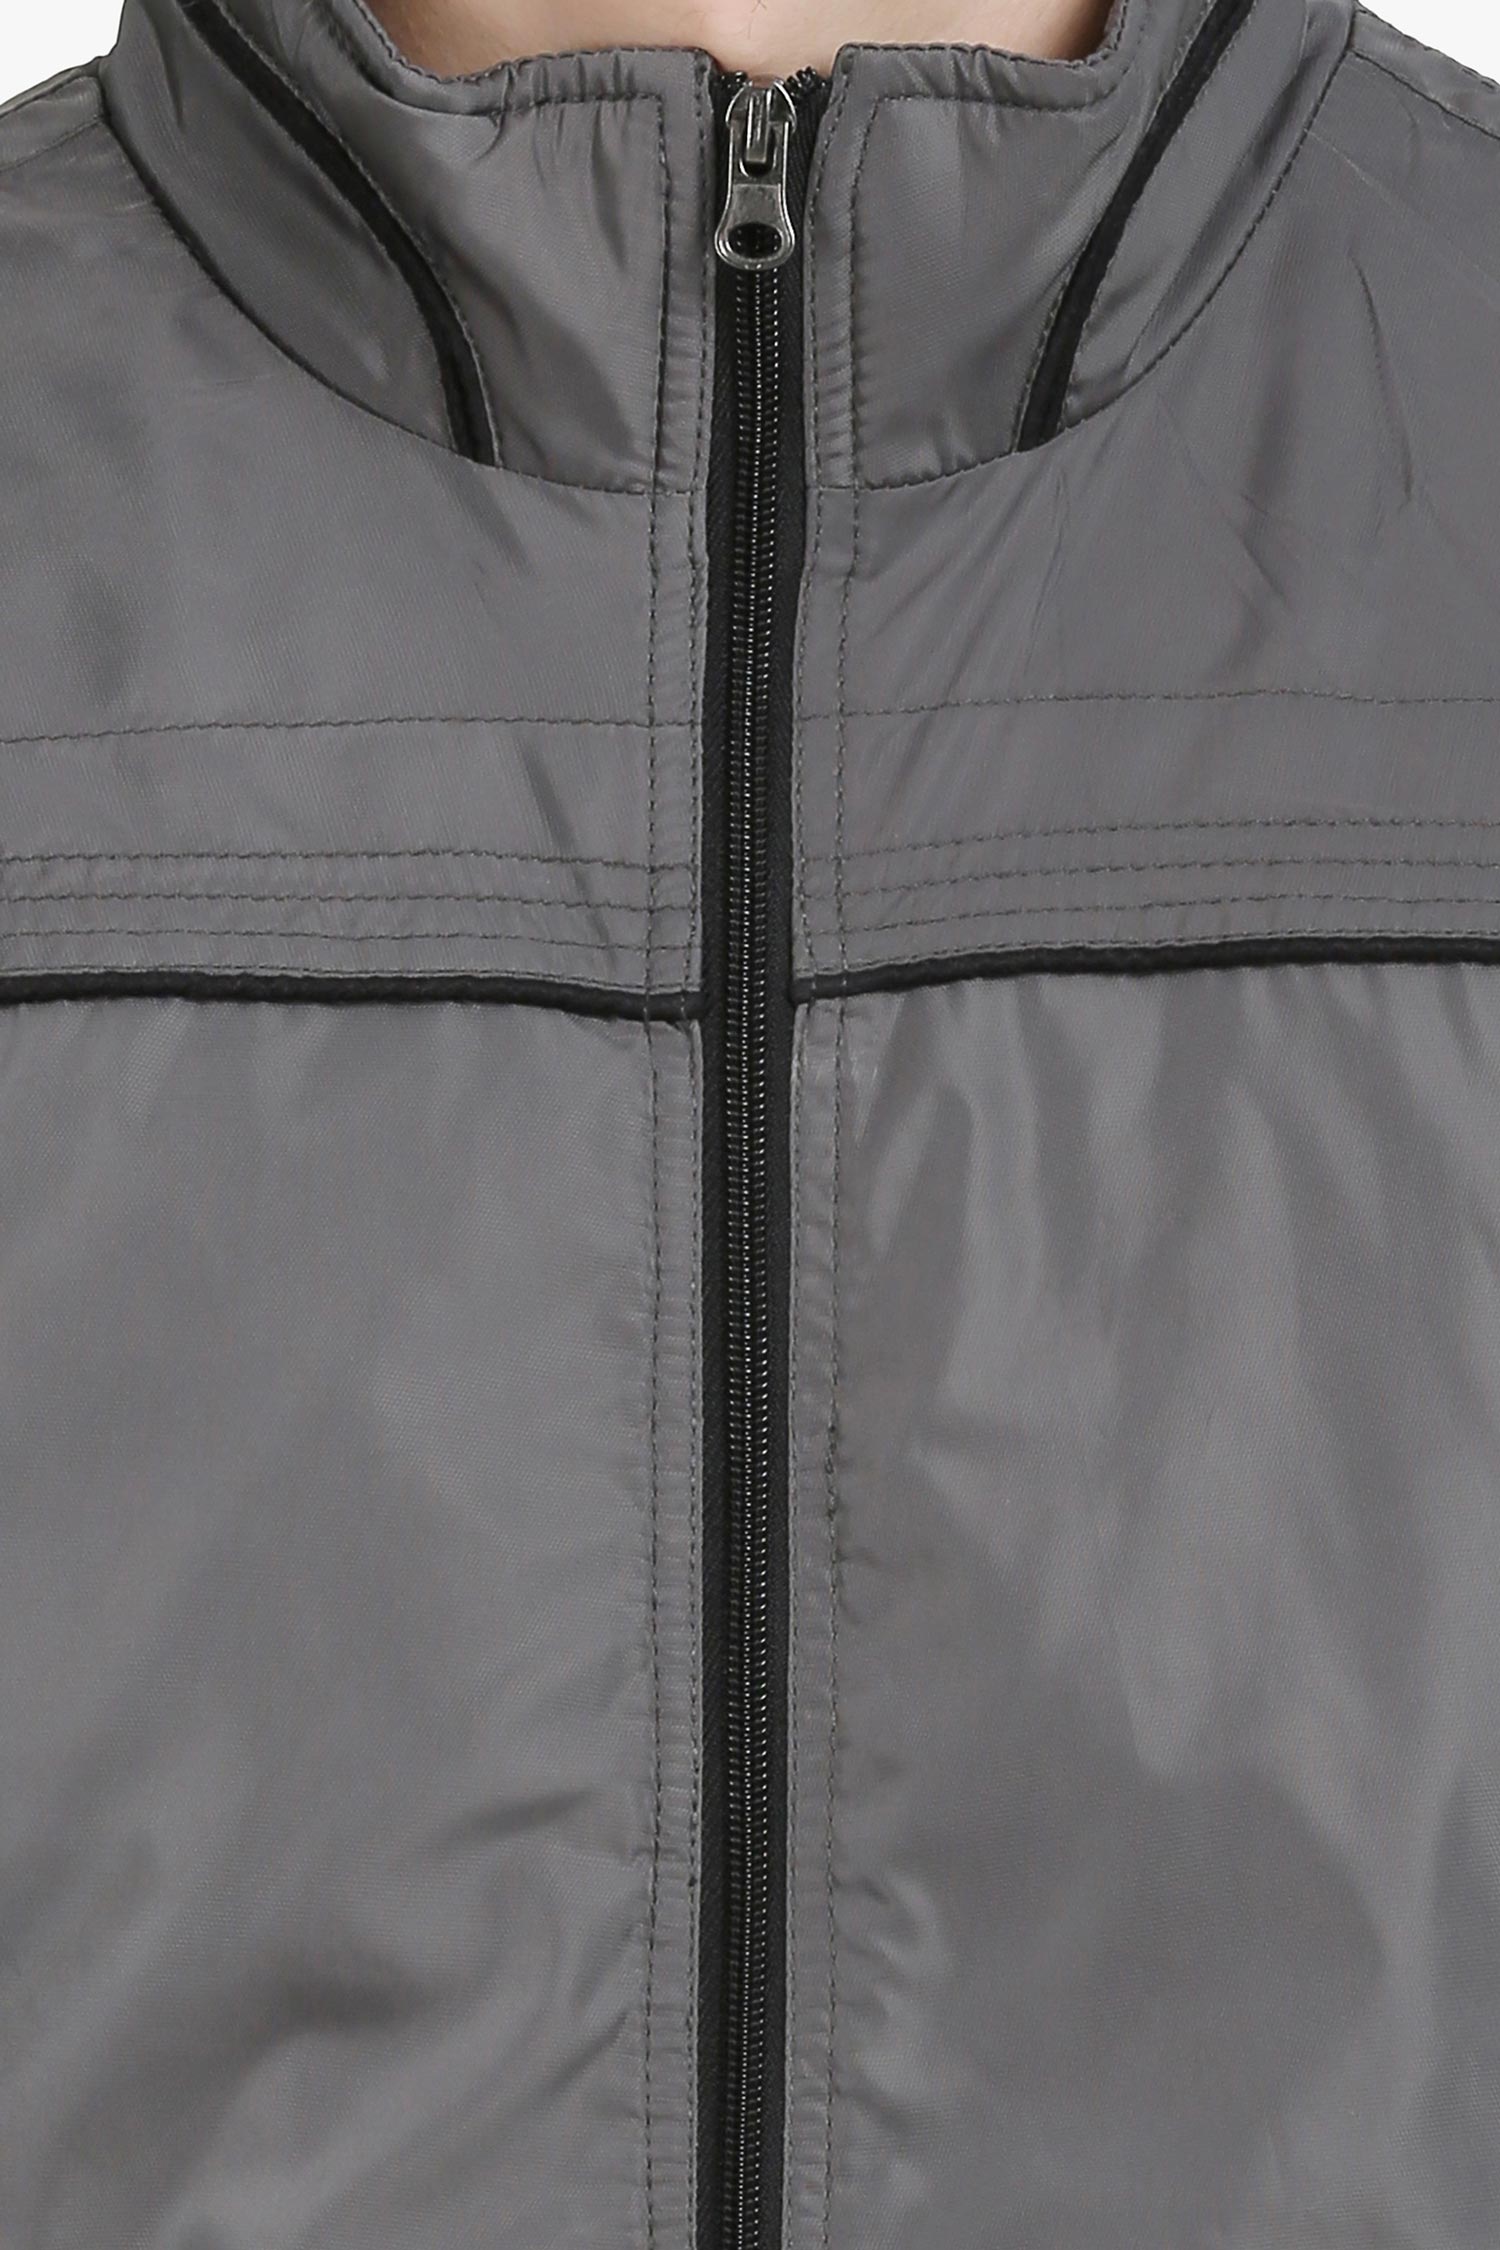 Men's jacket | AagainLifestyle